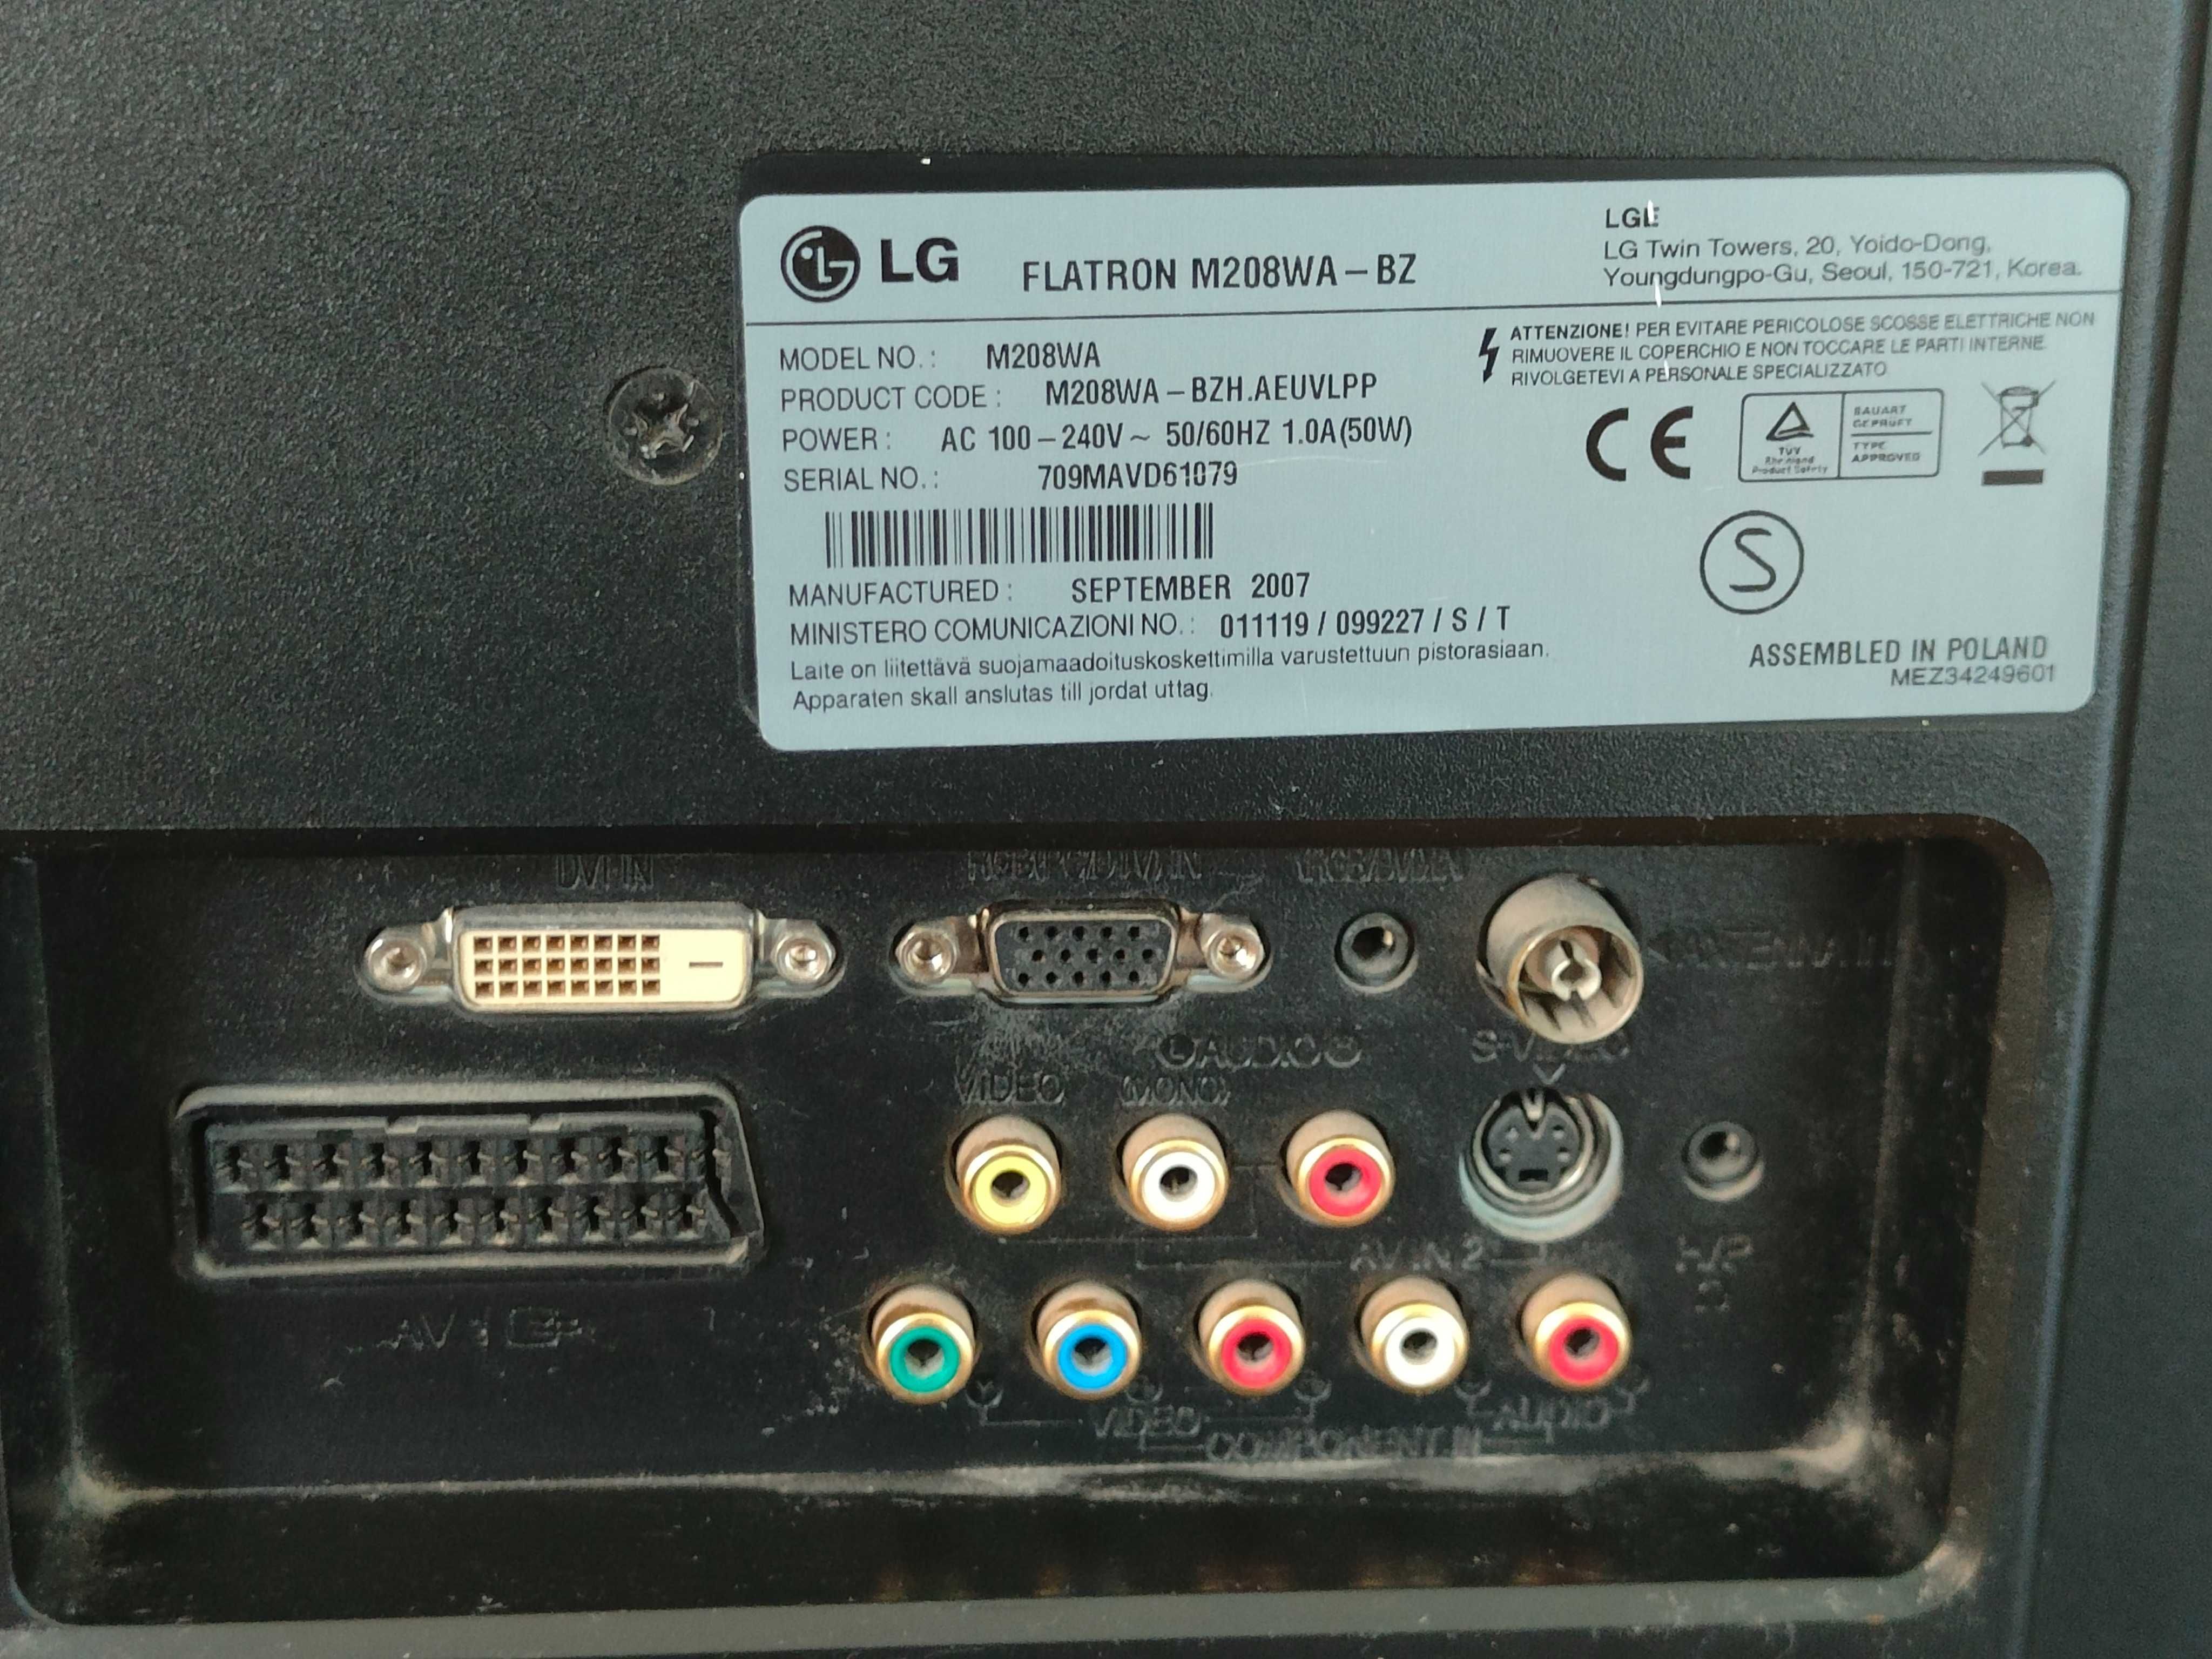 Monitor LG20 " Flatron M208WA